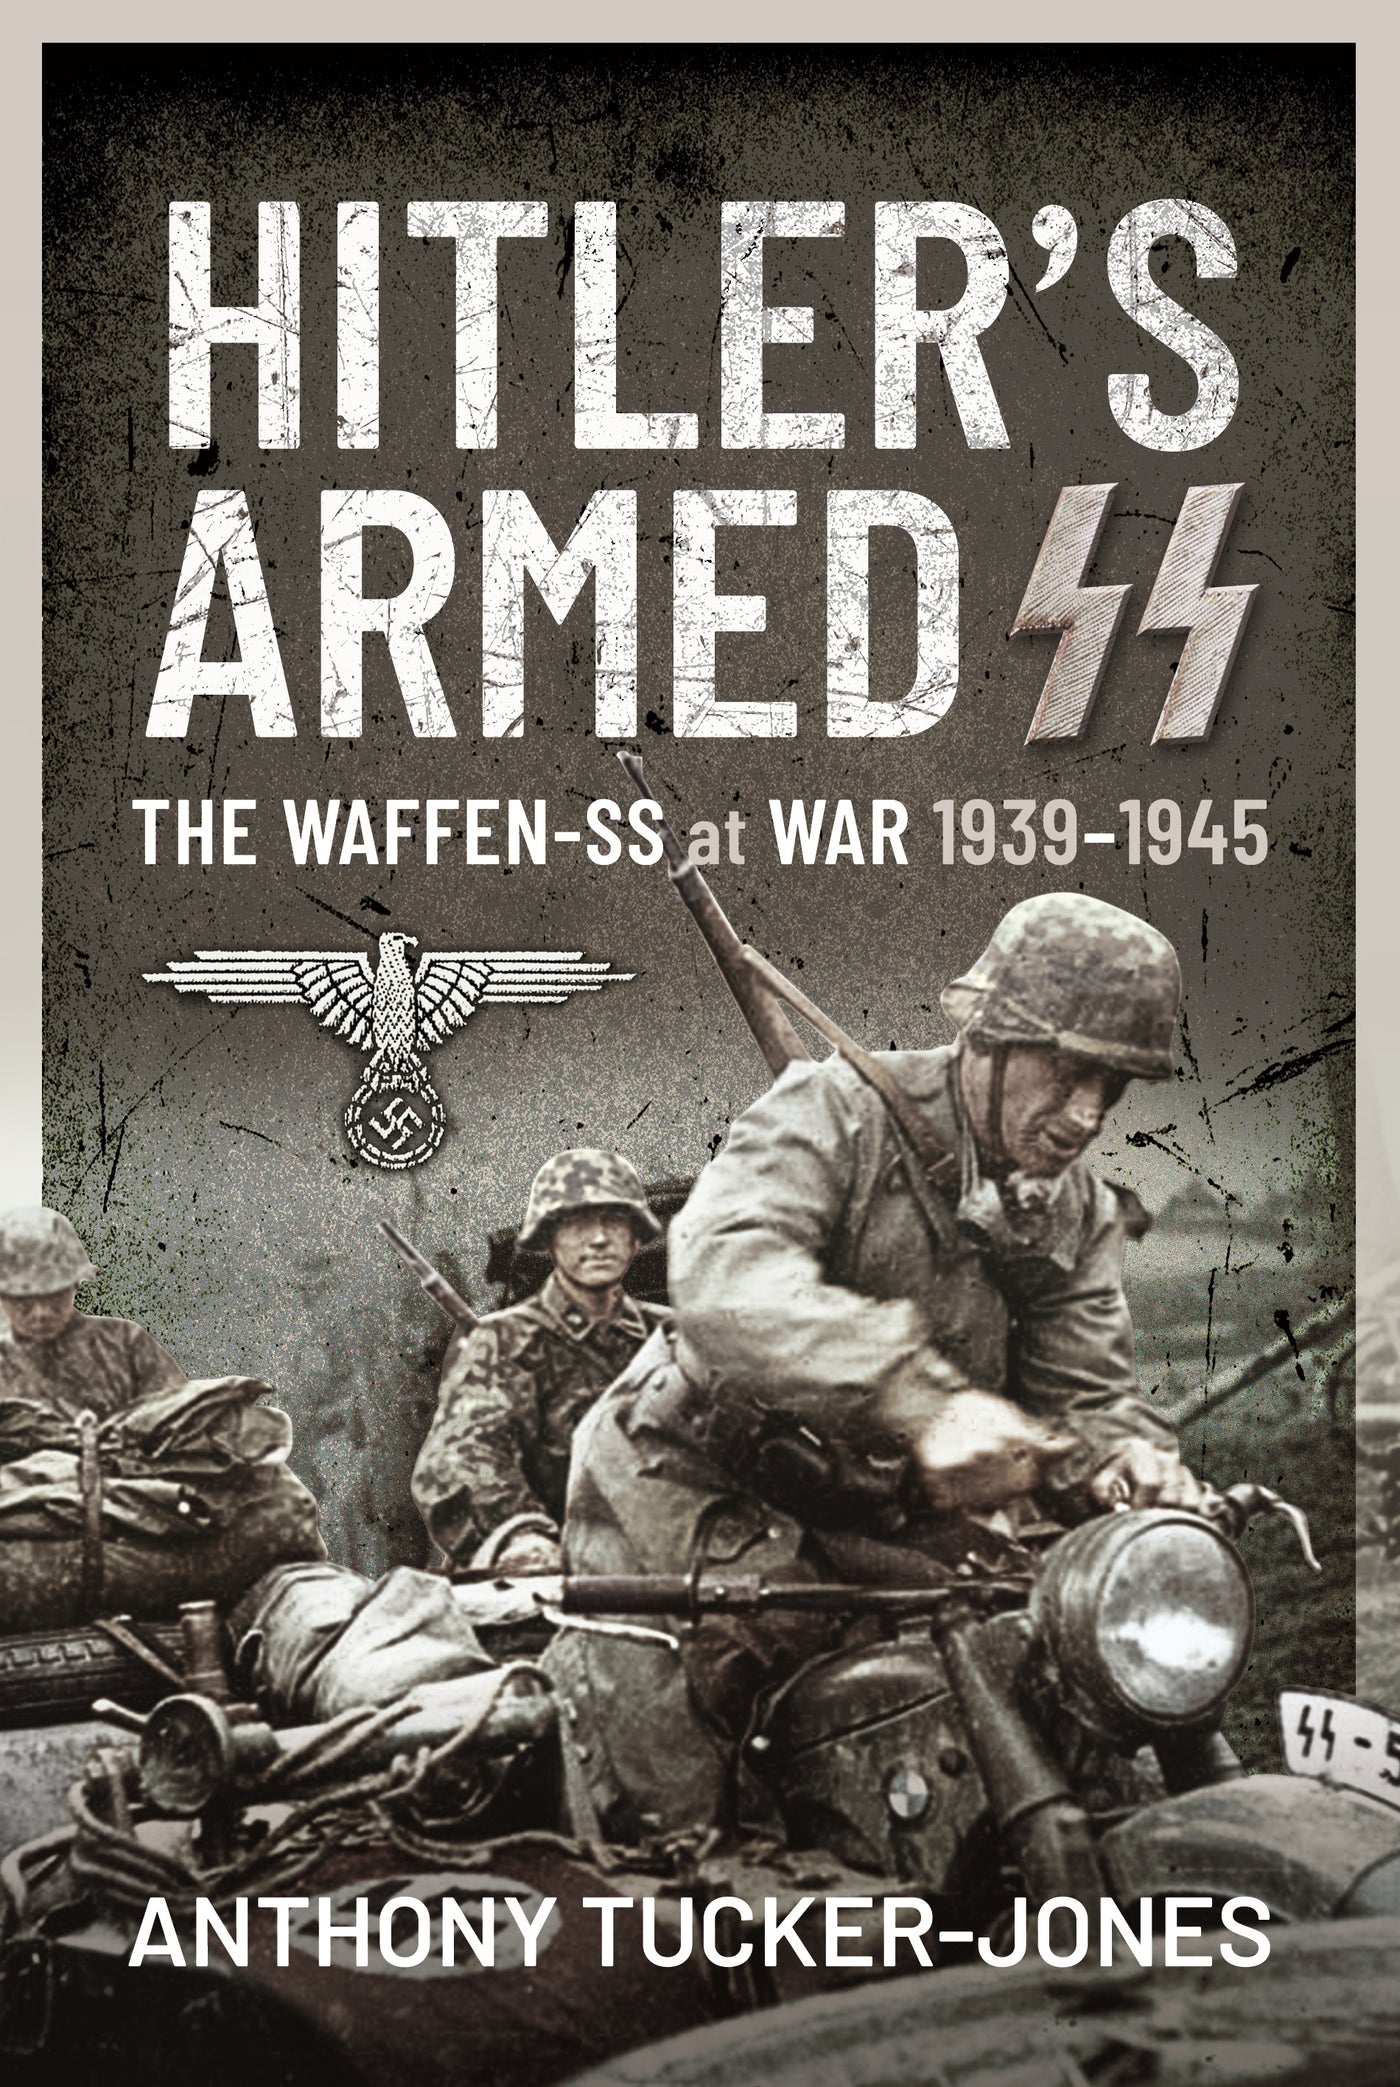 Hitler's Armed SS